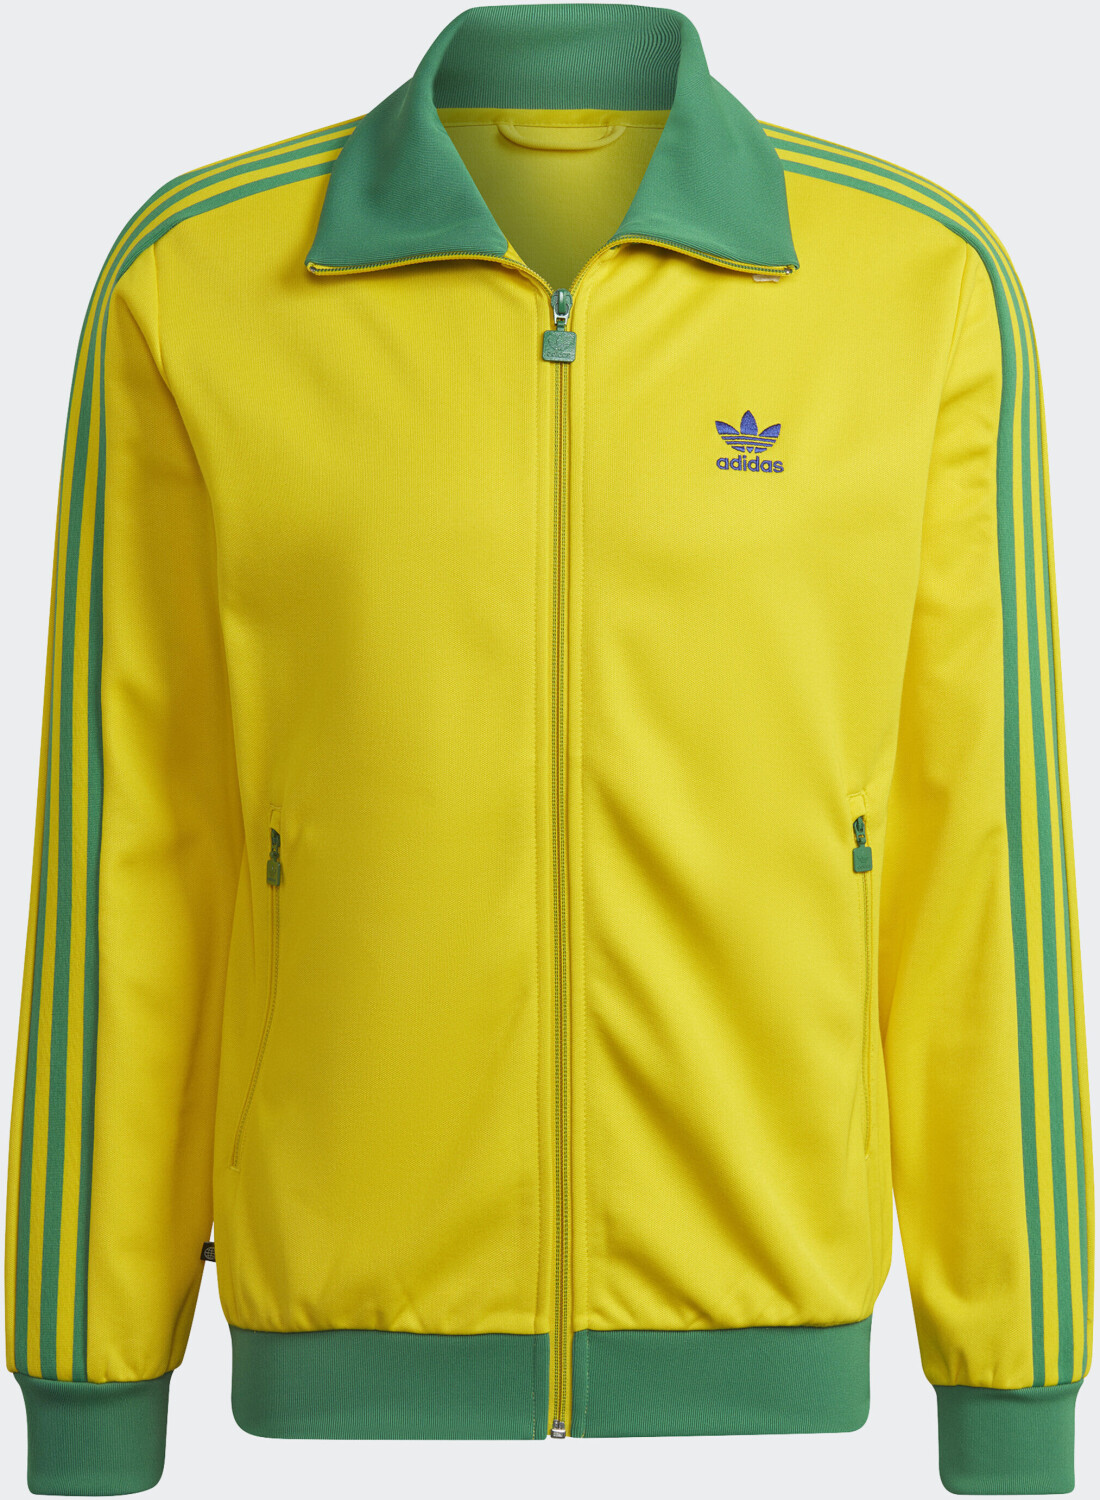 matig spellen ga werken Adidas Beckenbauer Originals Jacket | Preisvergleich Trainingsanzug bei  idealo.de